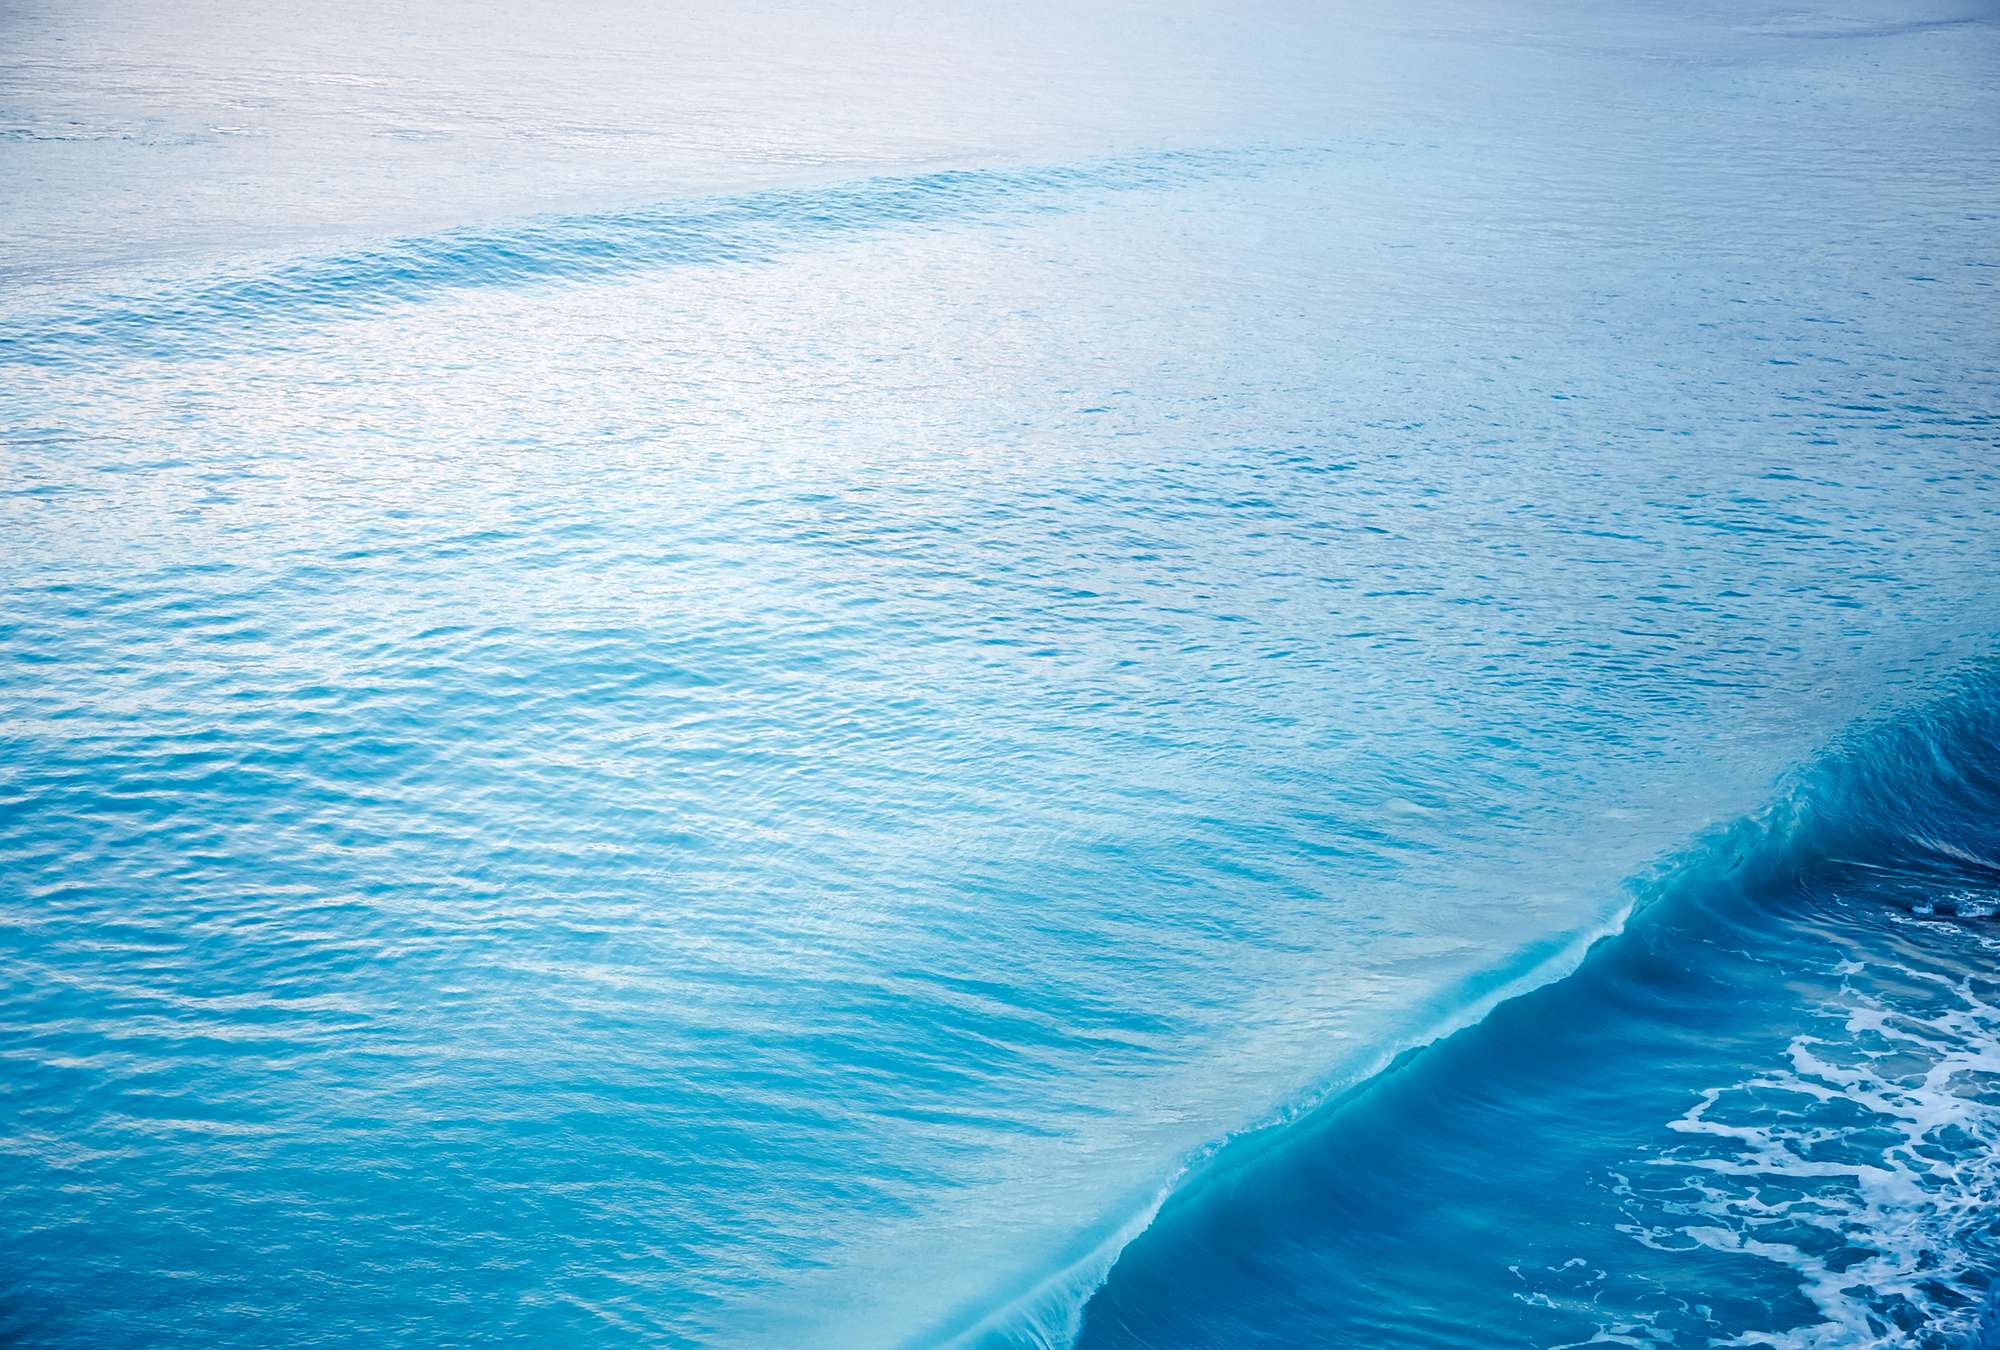             Fototapete einer brechenden Welle im Meer
        